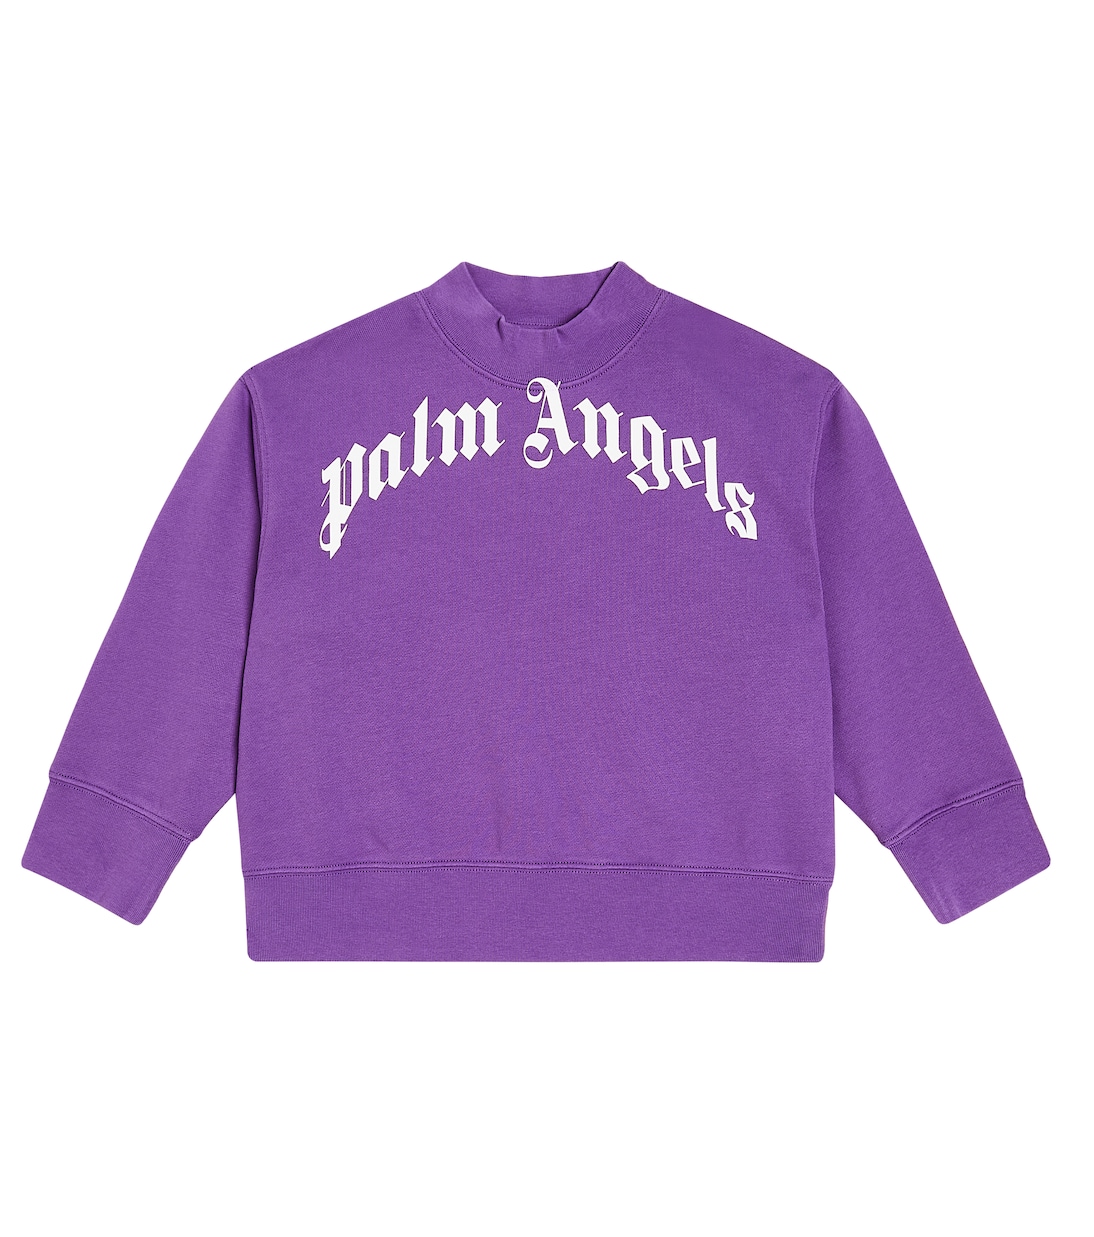 Толстовка с логотипом Palm Angels Kids, фиолетовый